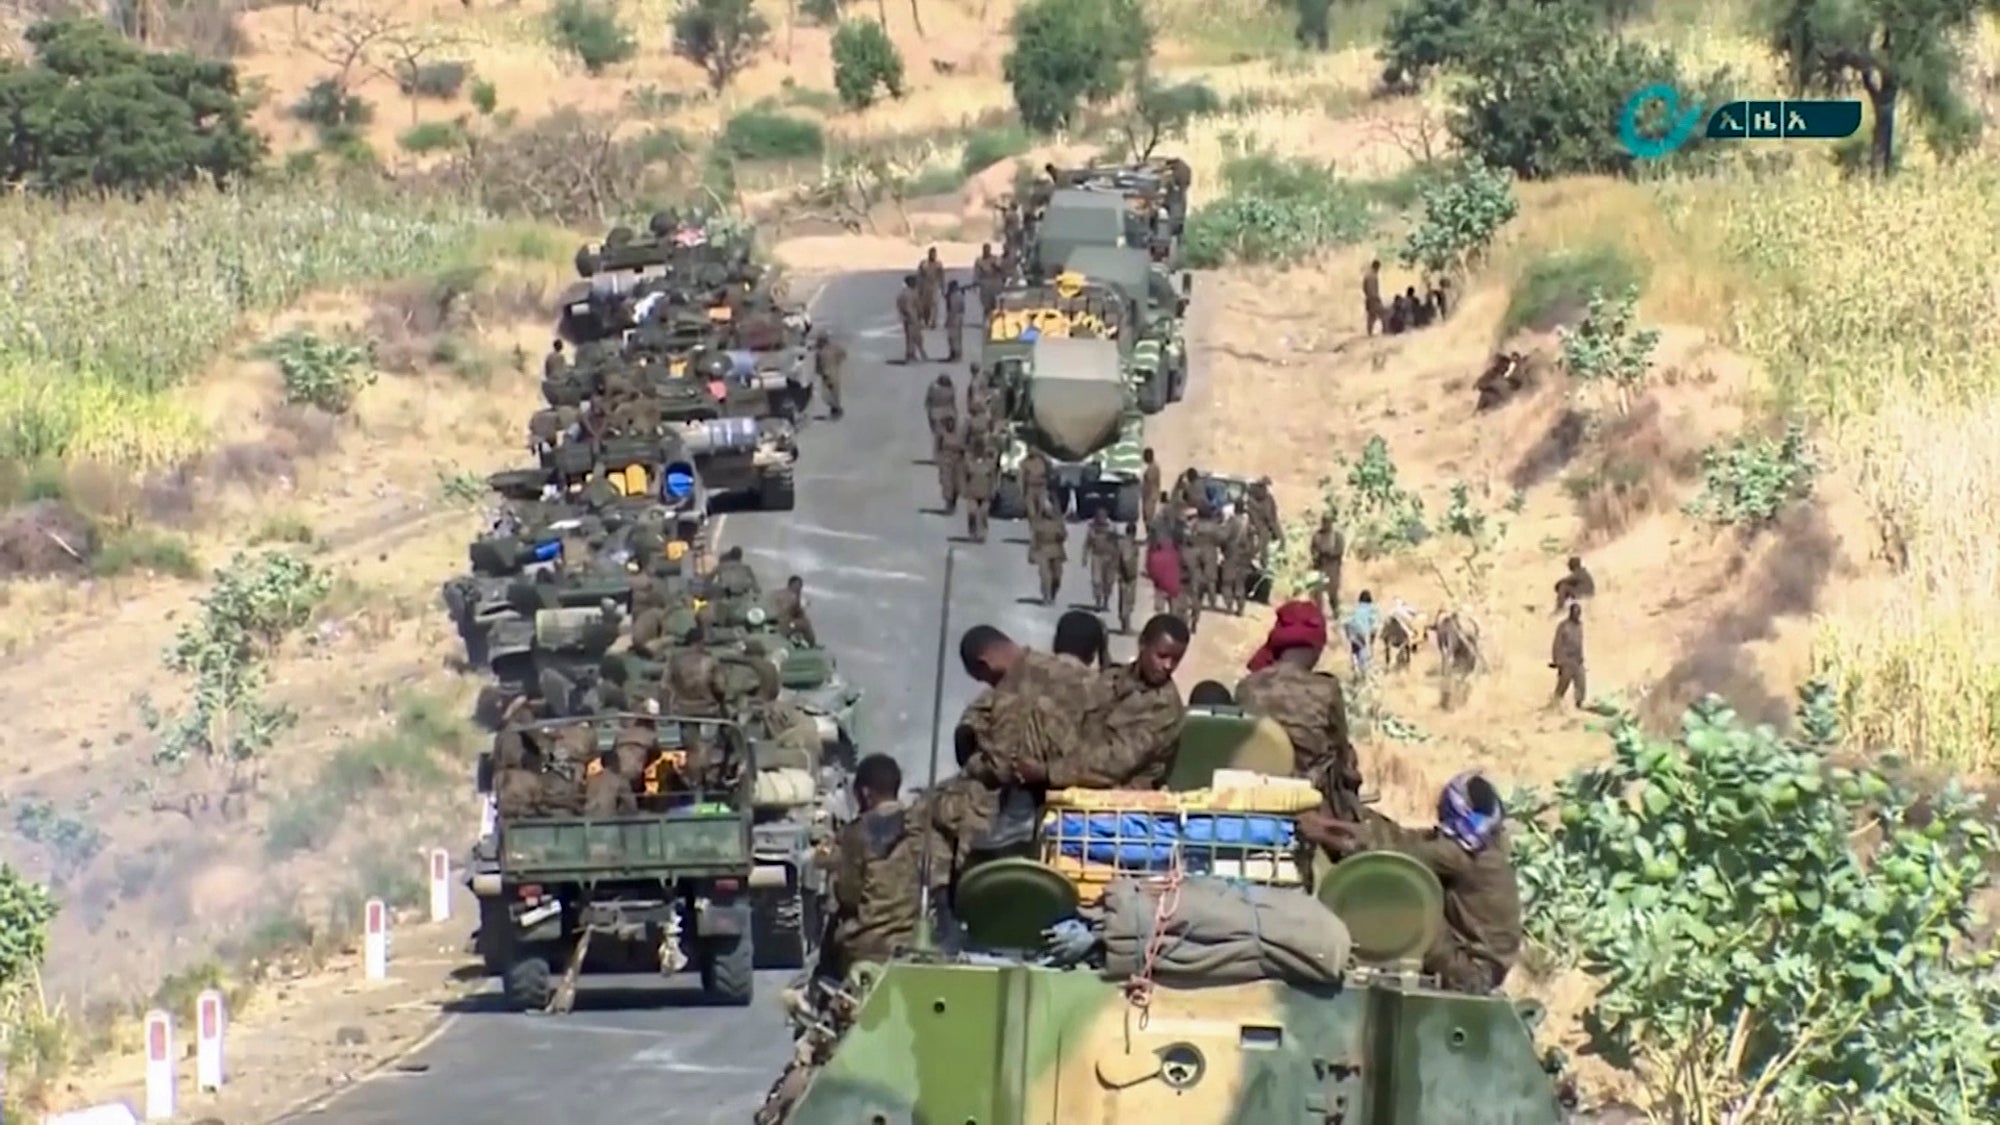 Ethiopia Military Confrontation